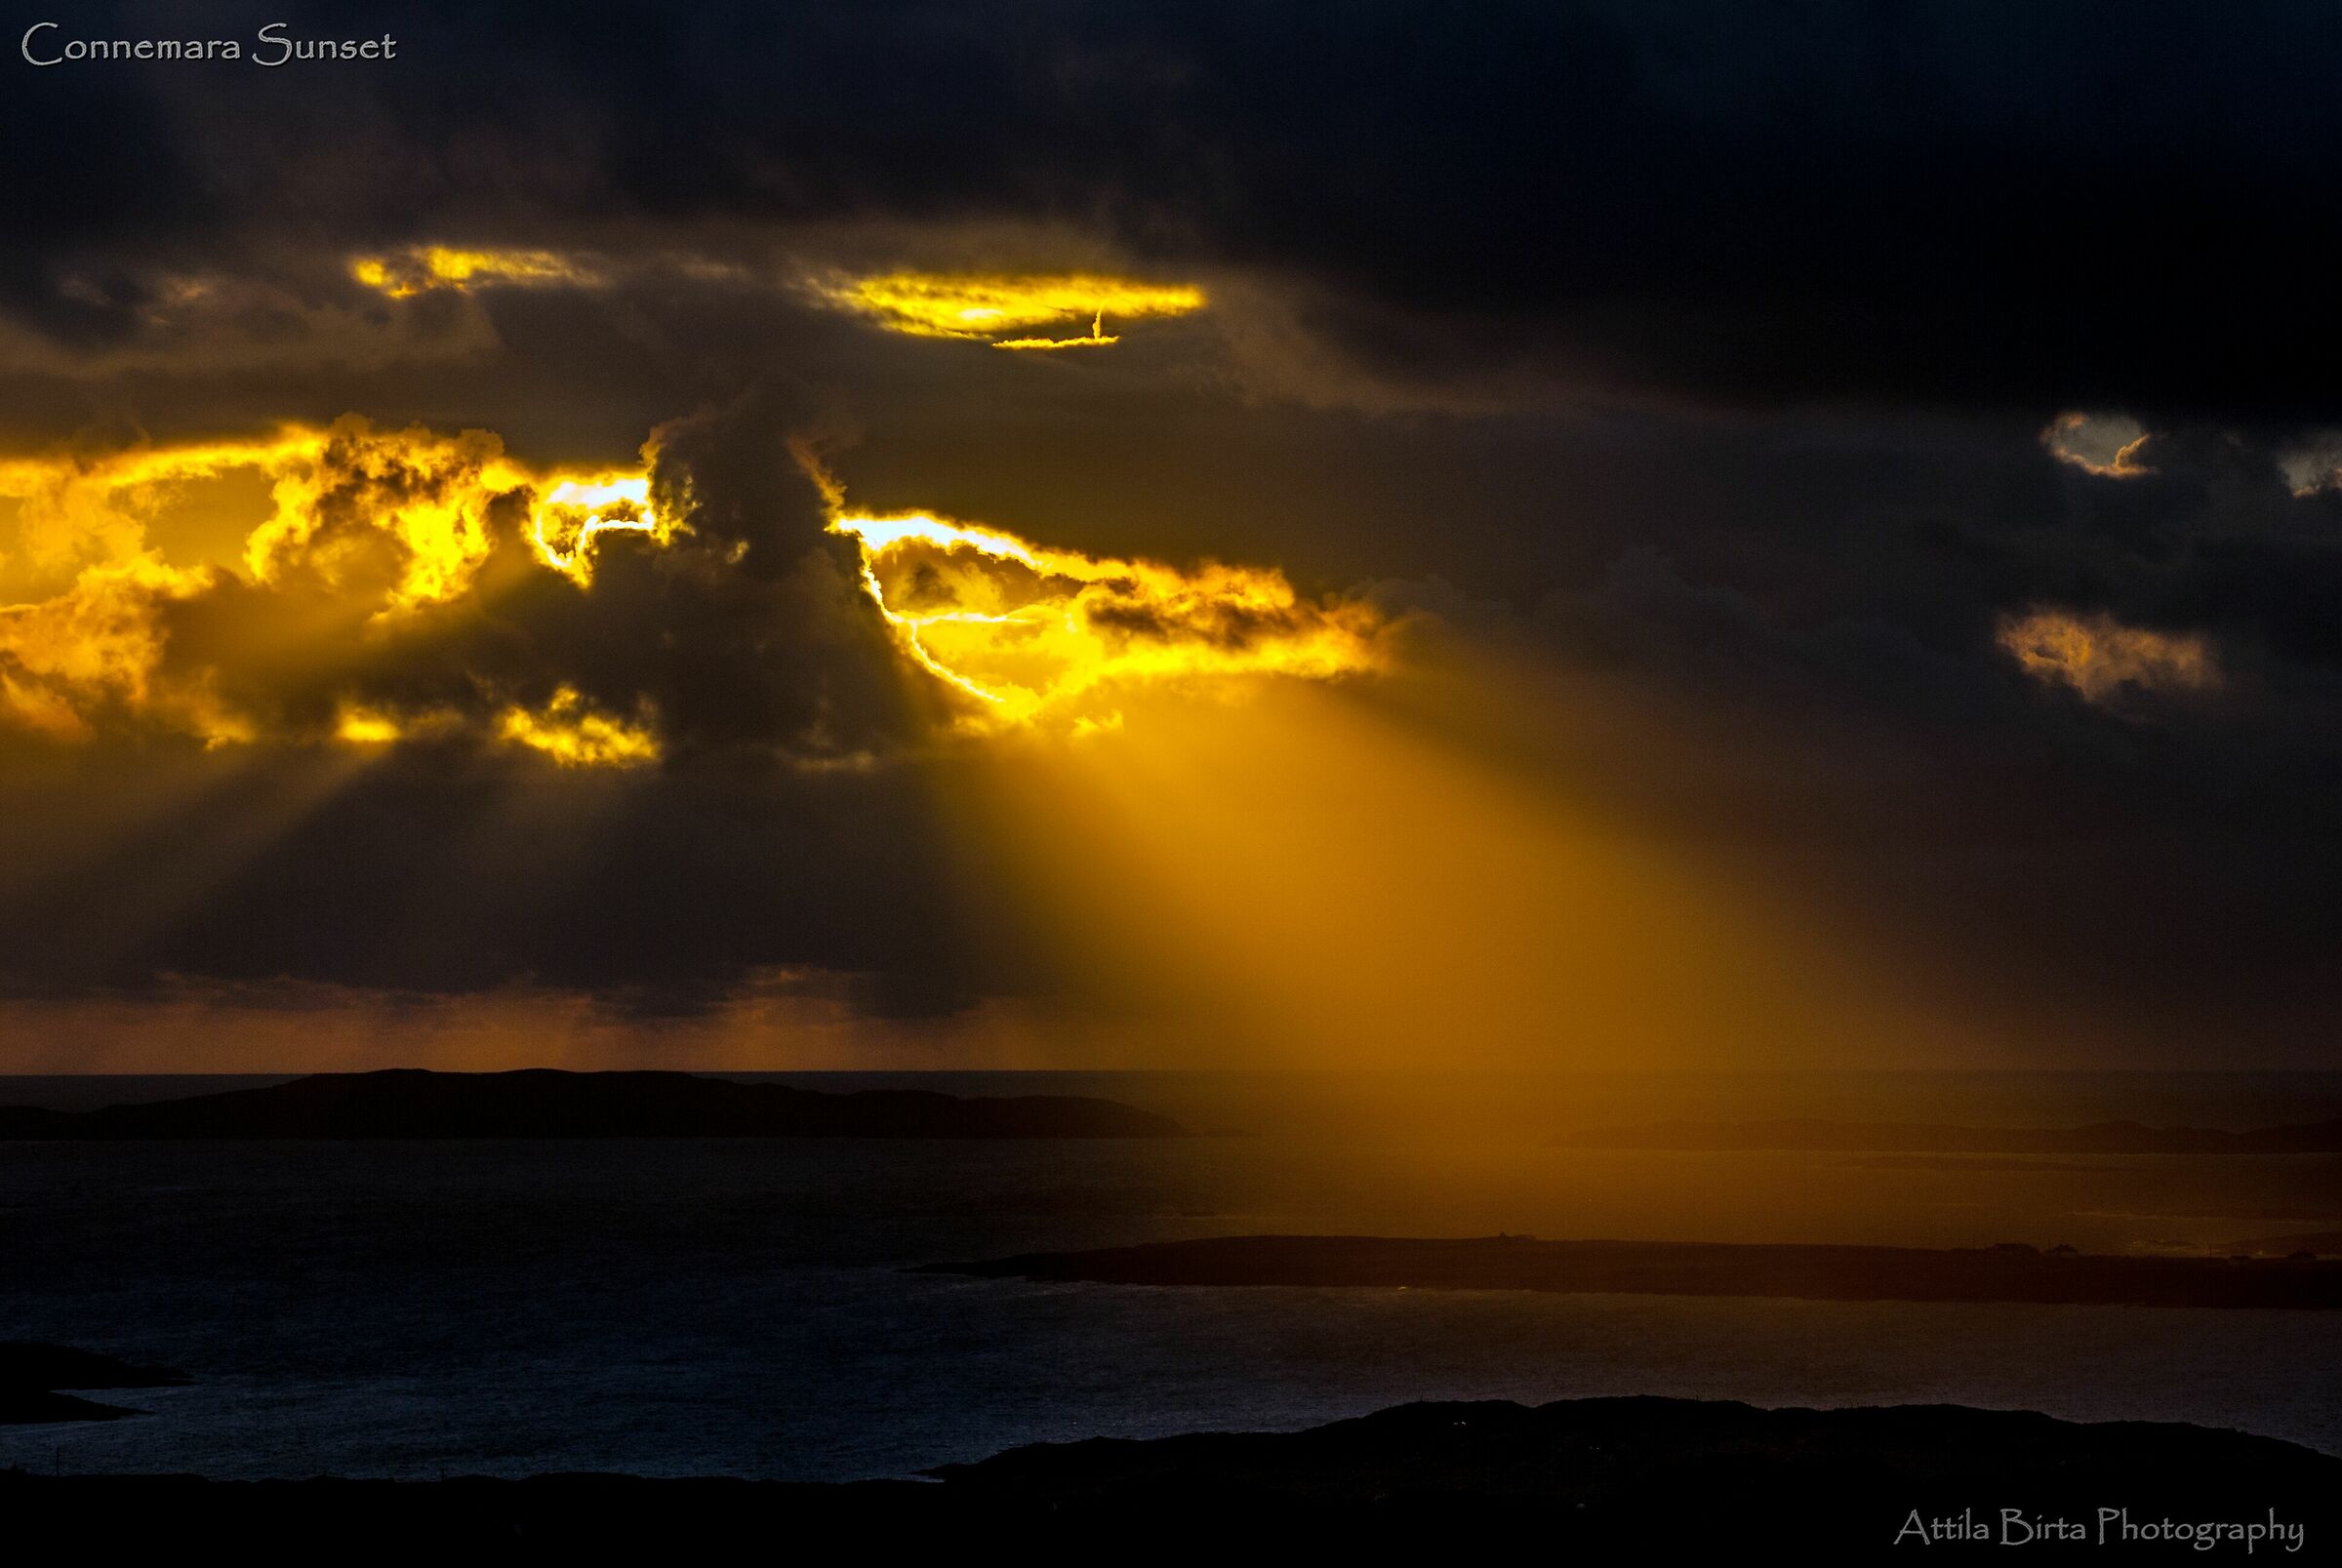 Connemara Sunset (Upper Sky Road near Clifden, Ireland)...